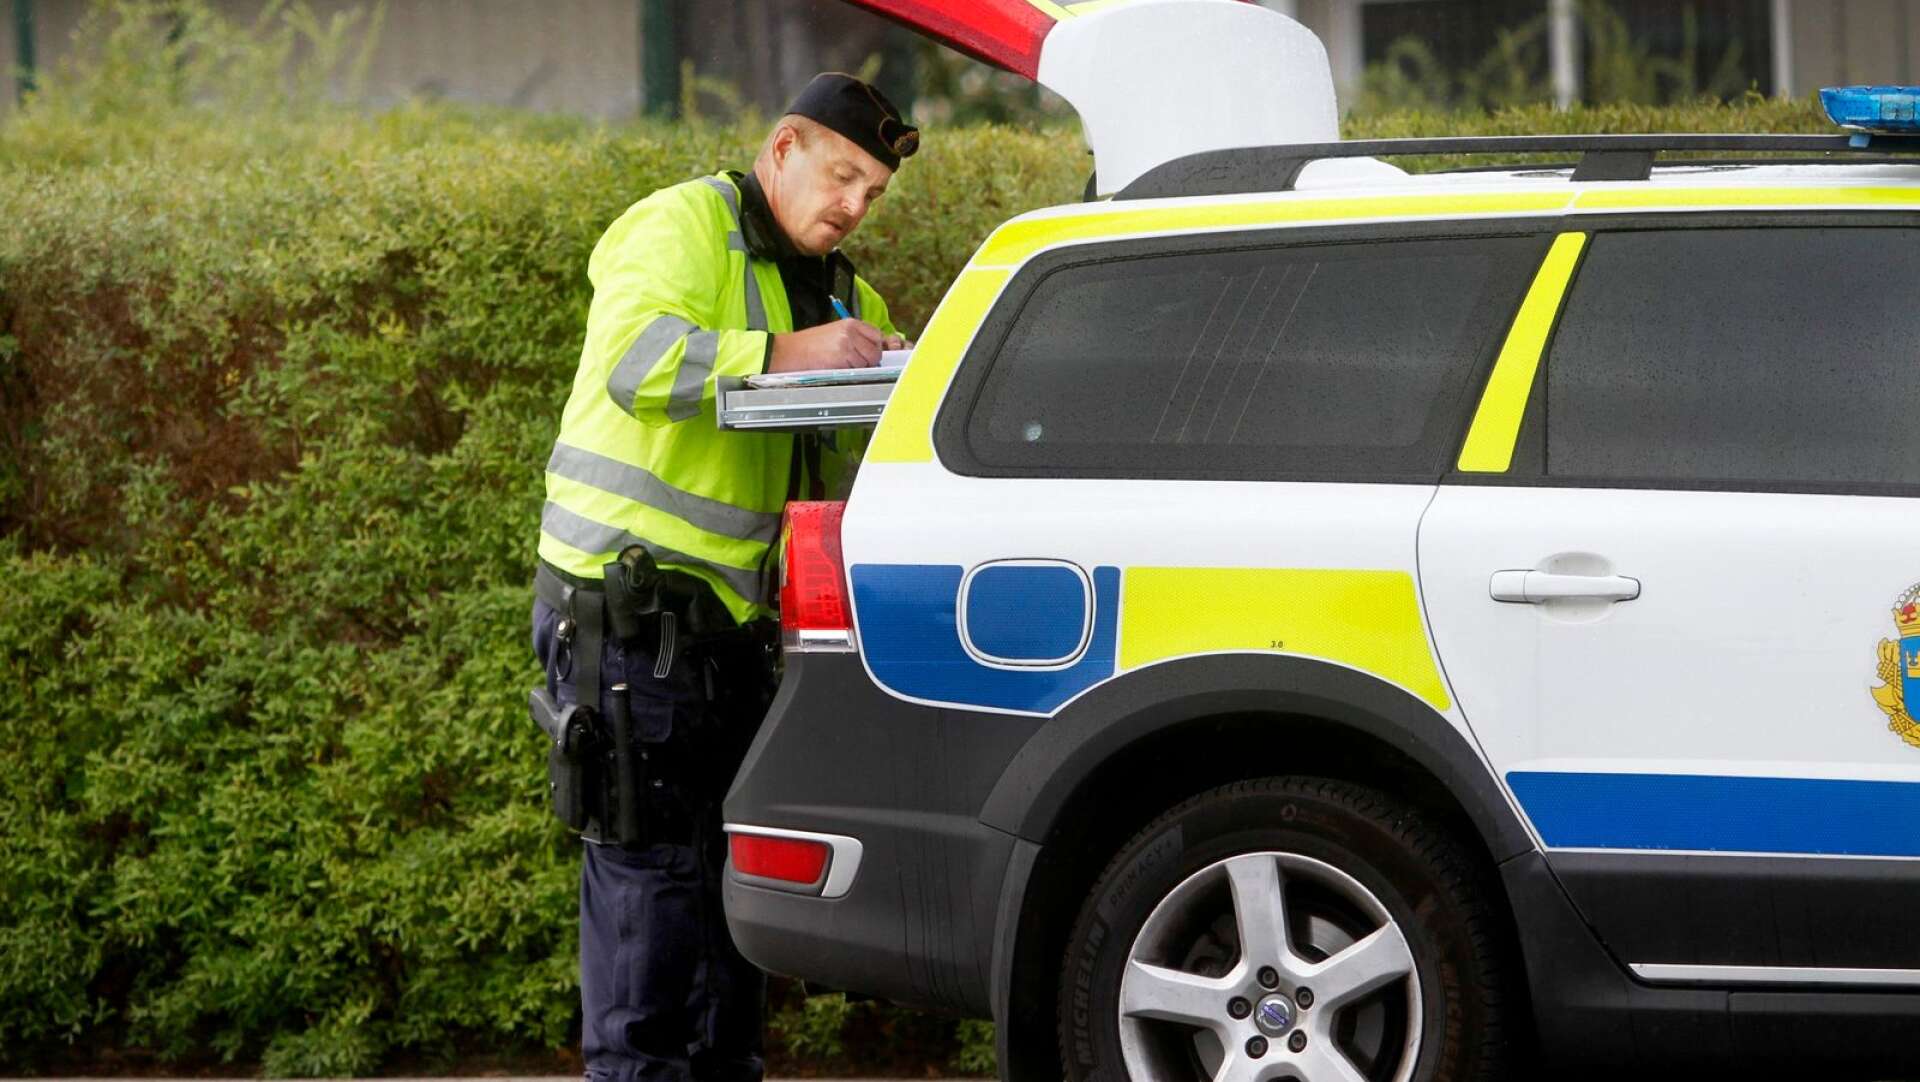 När polisen hade fartkontroll på Bergsgatan uppstod en incident. En mc-föraren vägrade att stanna och smet från polisen.